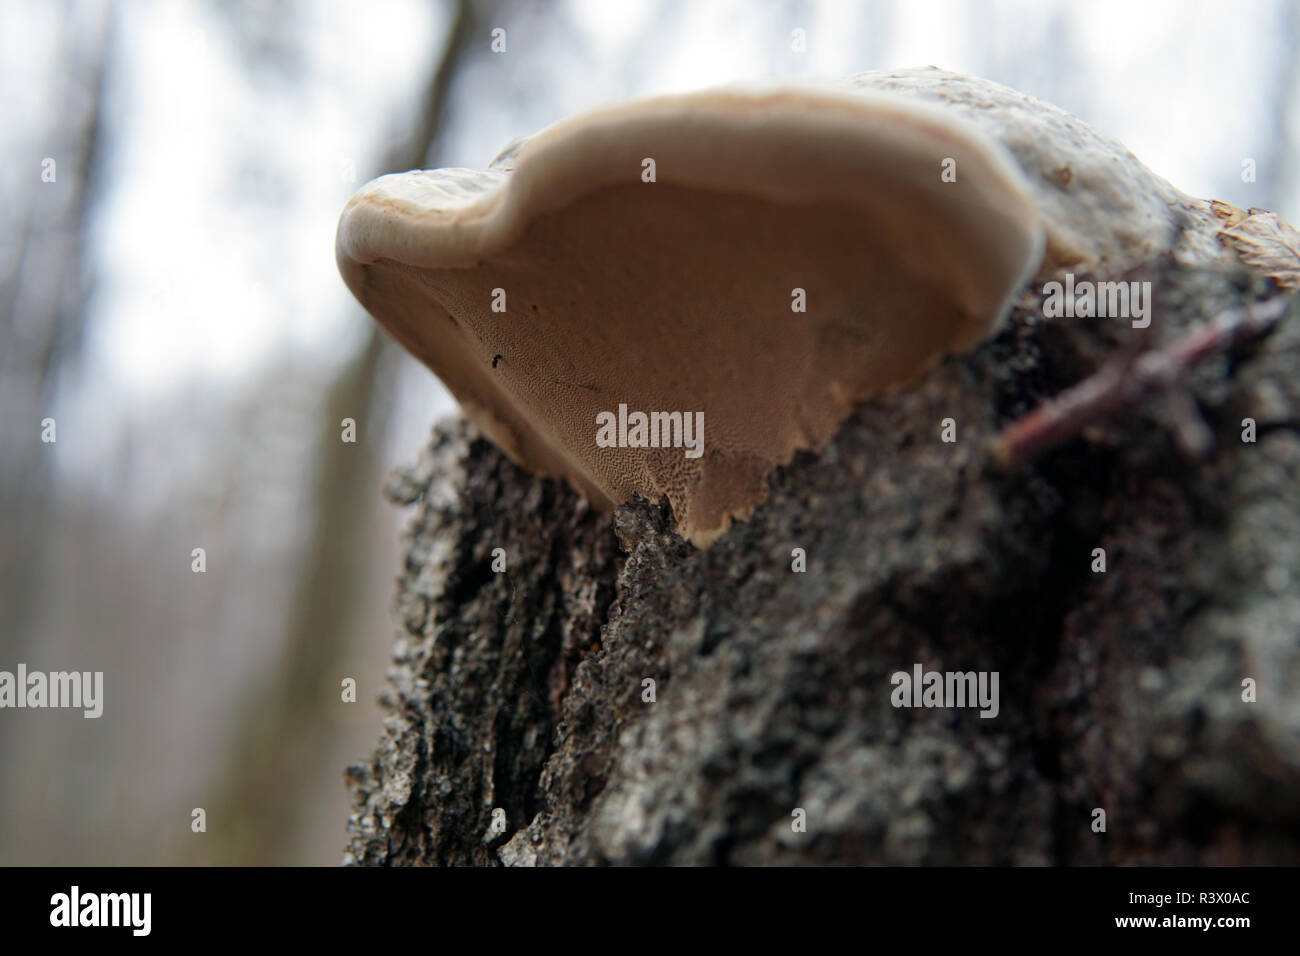 Phellinus igniarius mushroom, growing under fallen oak tree, showing minute spores underneath Stock Photo